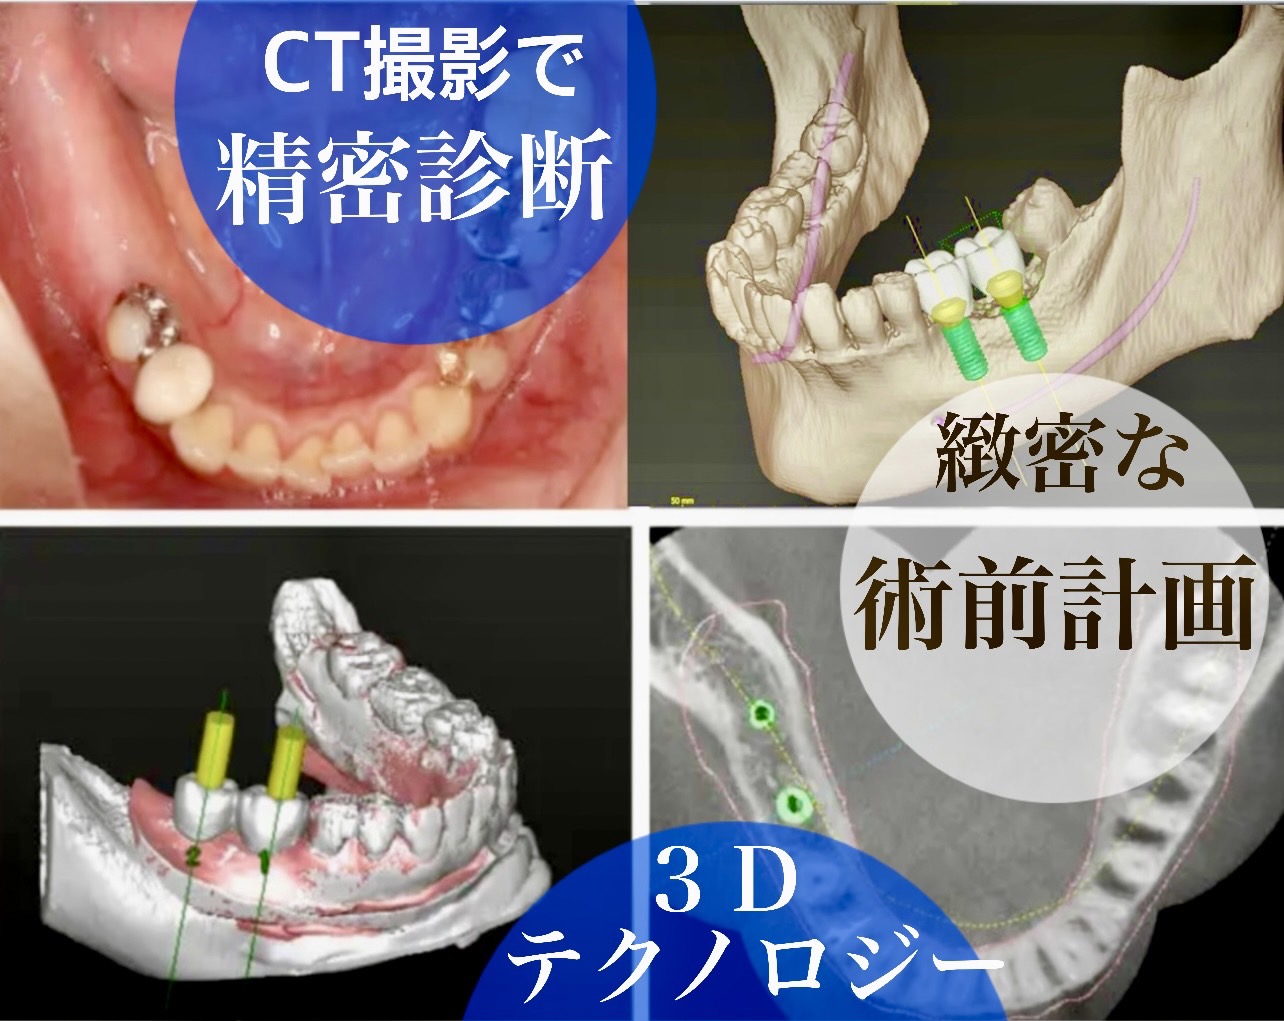 佐賀市の歯医者、池田歯科こども歯科のコンセプト